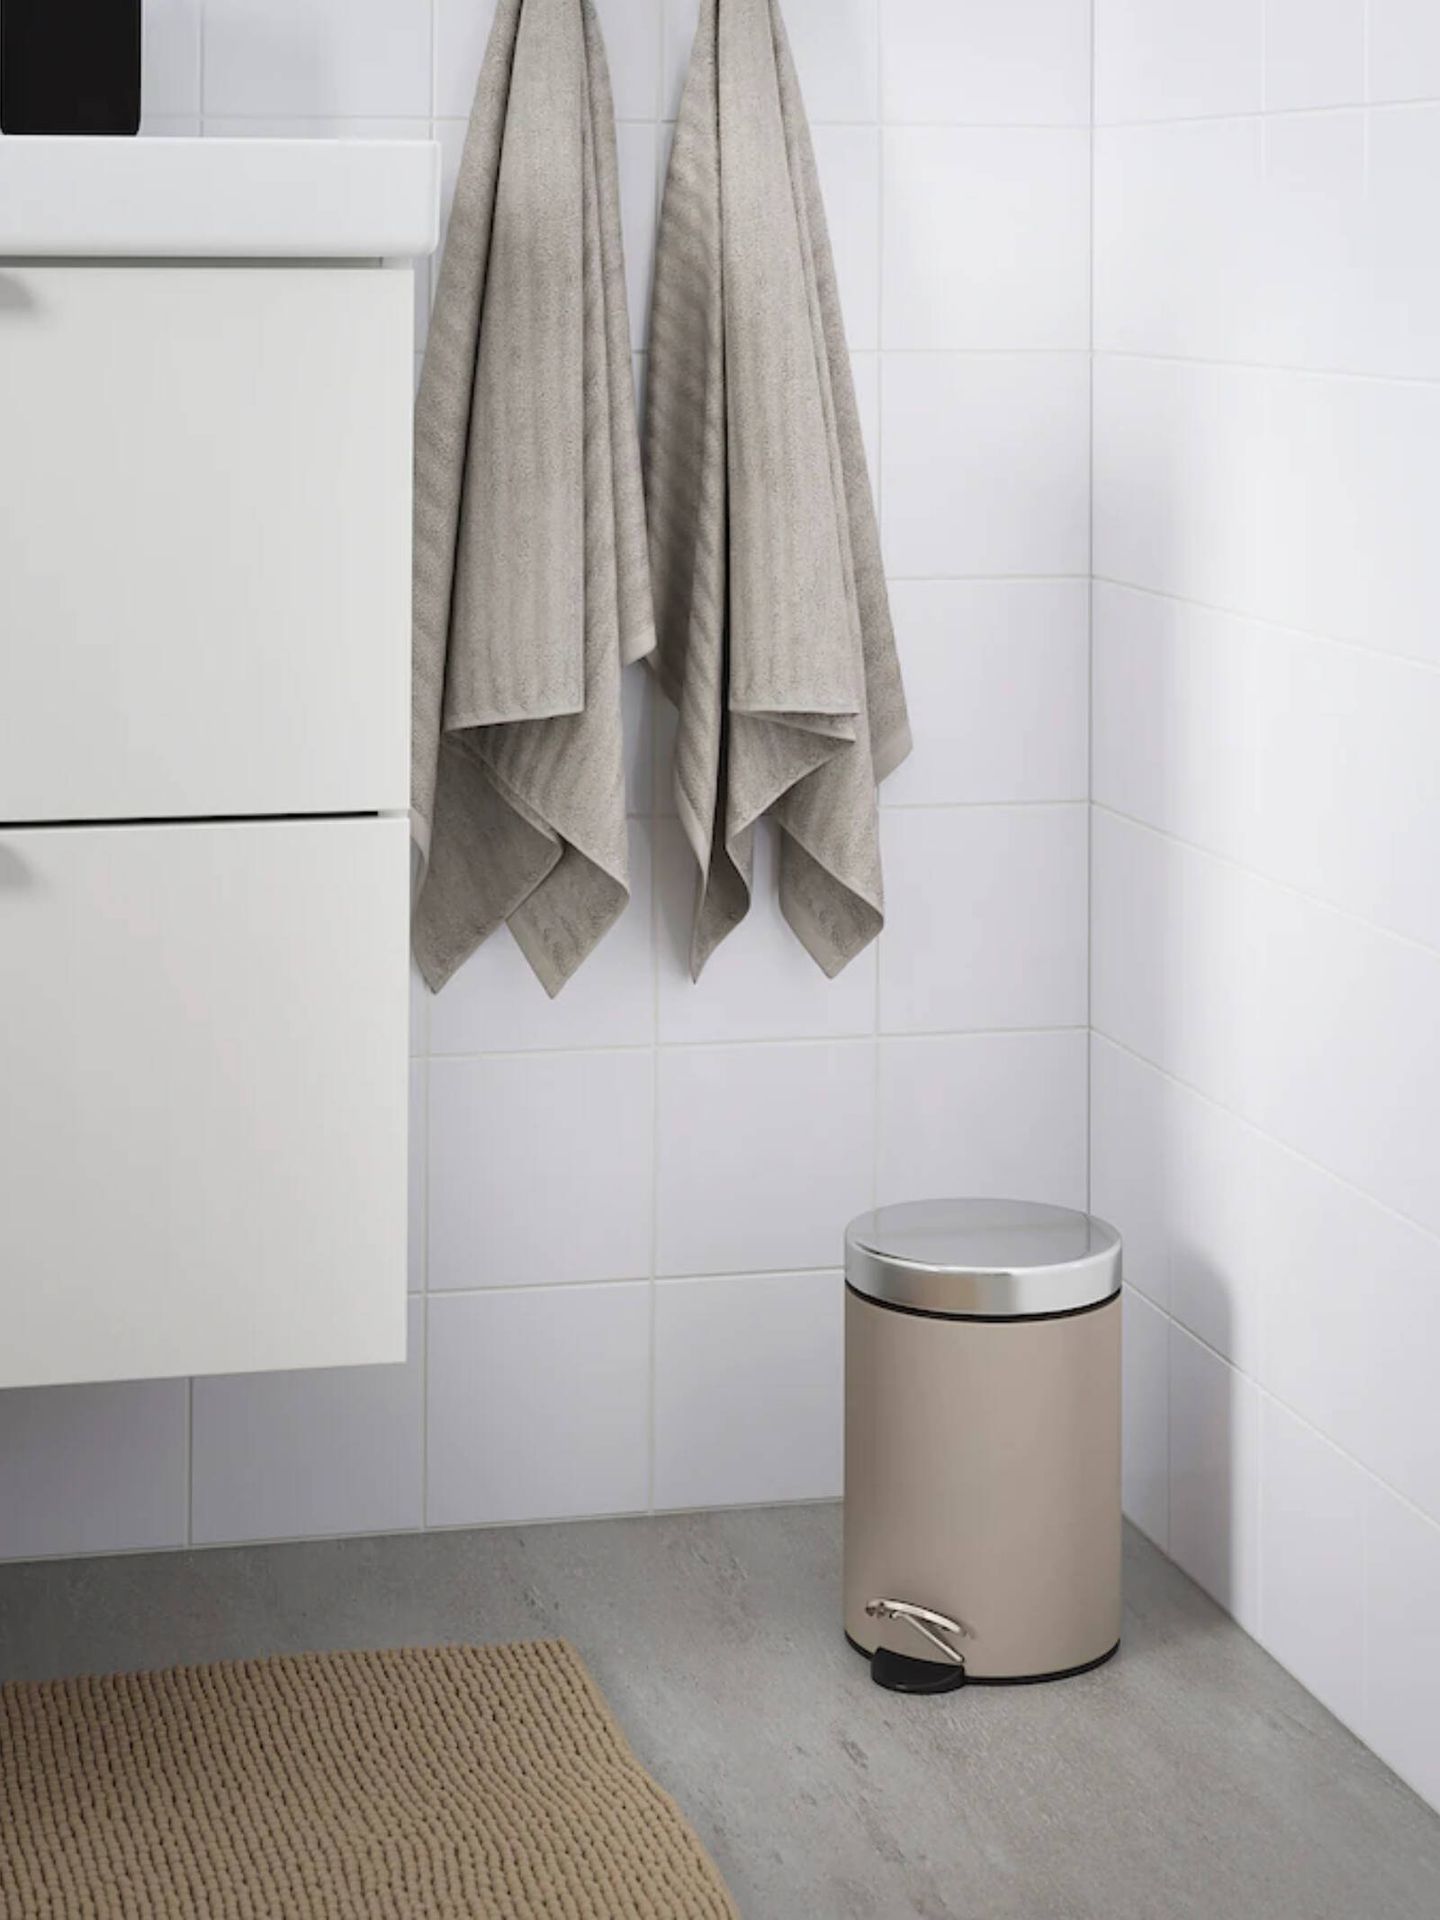 Soluciones por menos de 20 euros para baños pequeños. (Cortesía/Ikea)